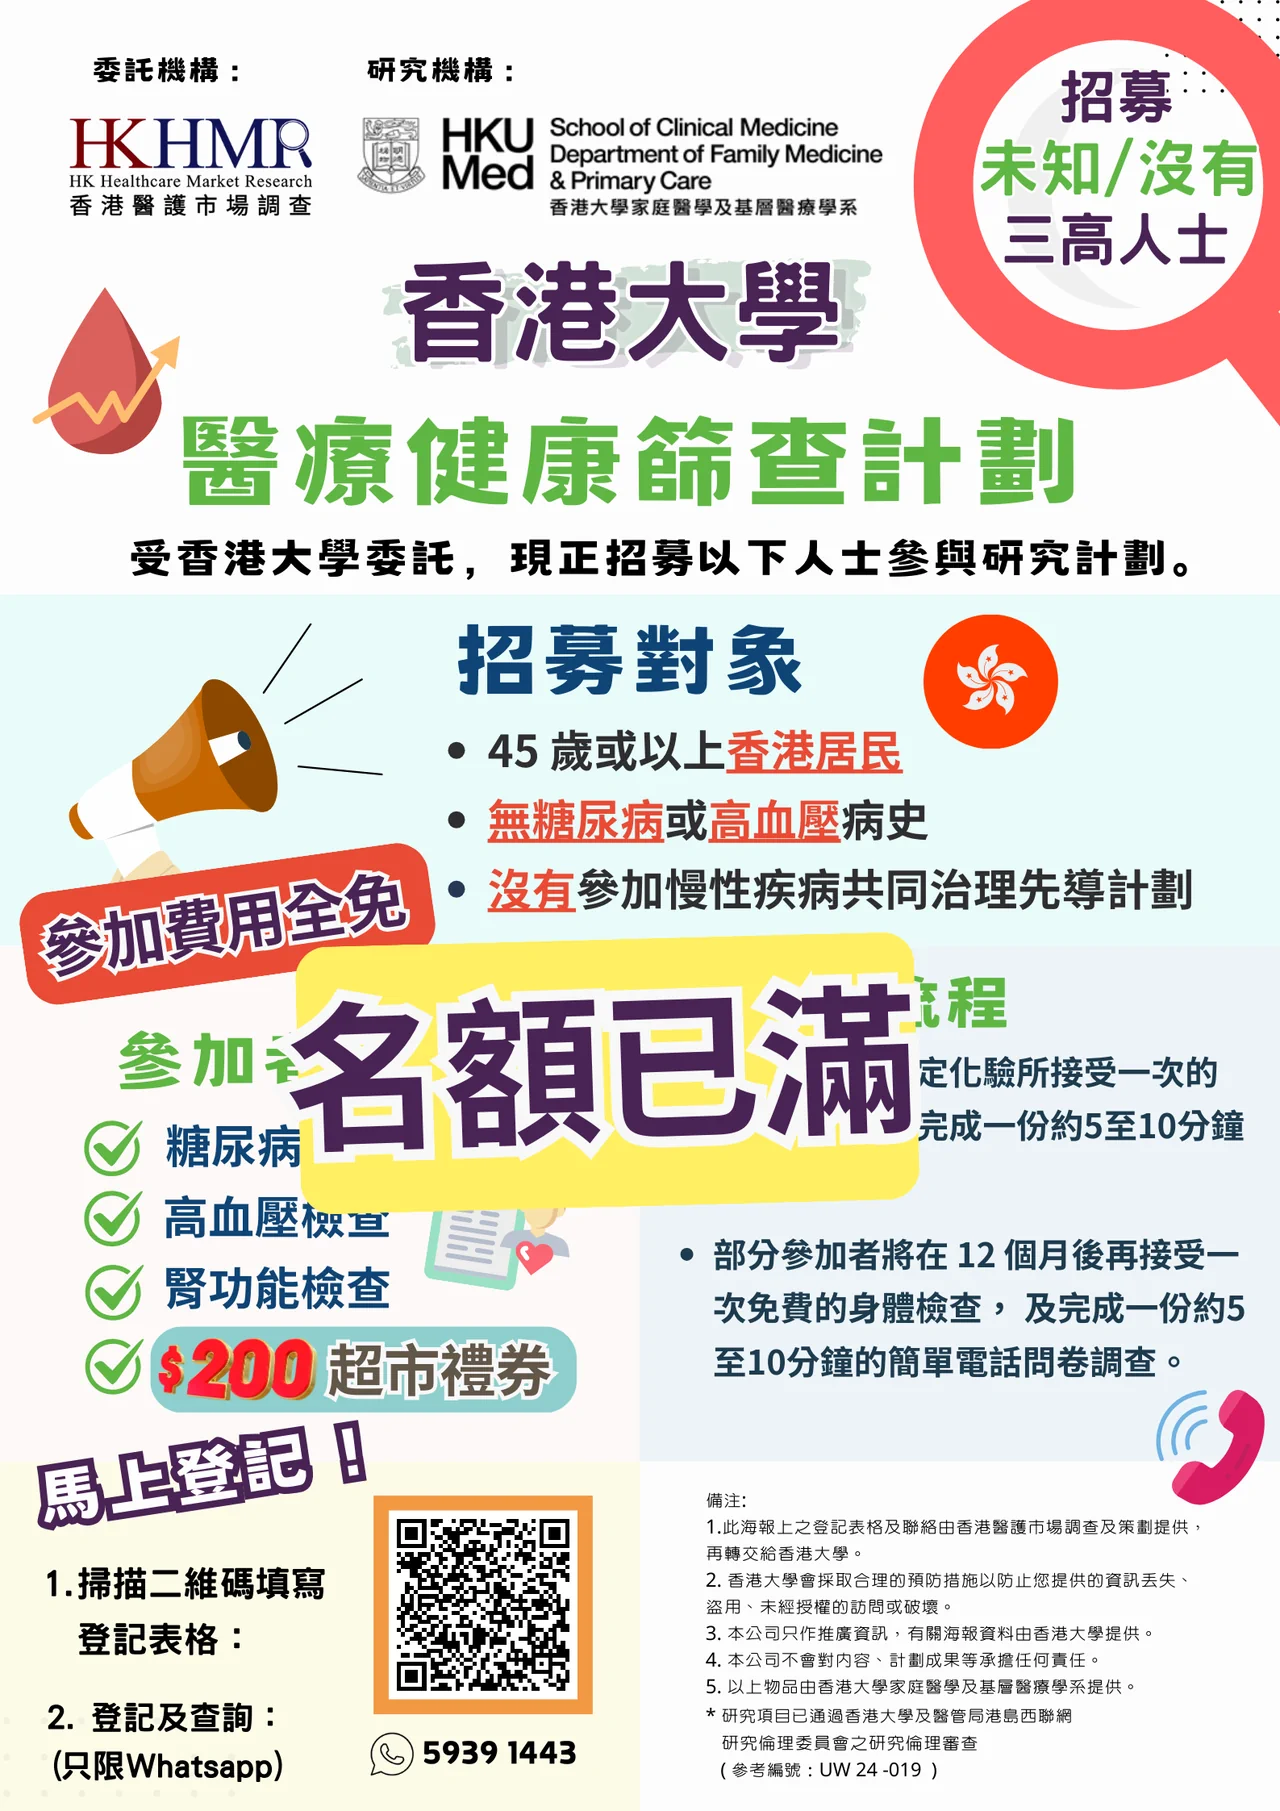 香港大學免費健康篩查計劃已滿額